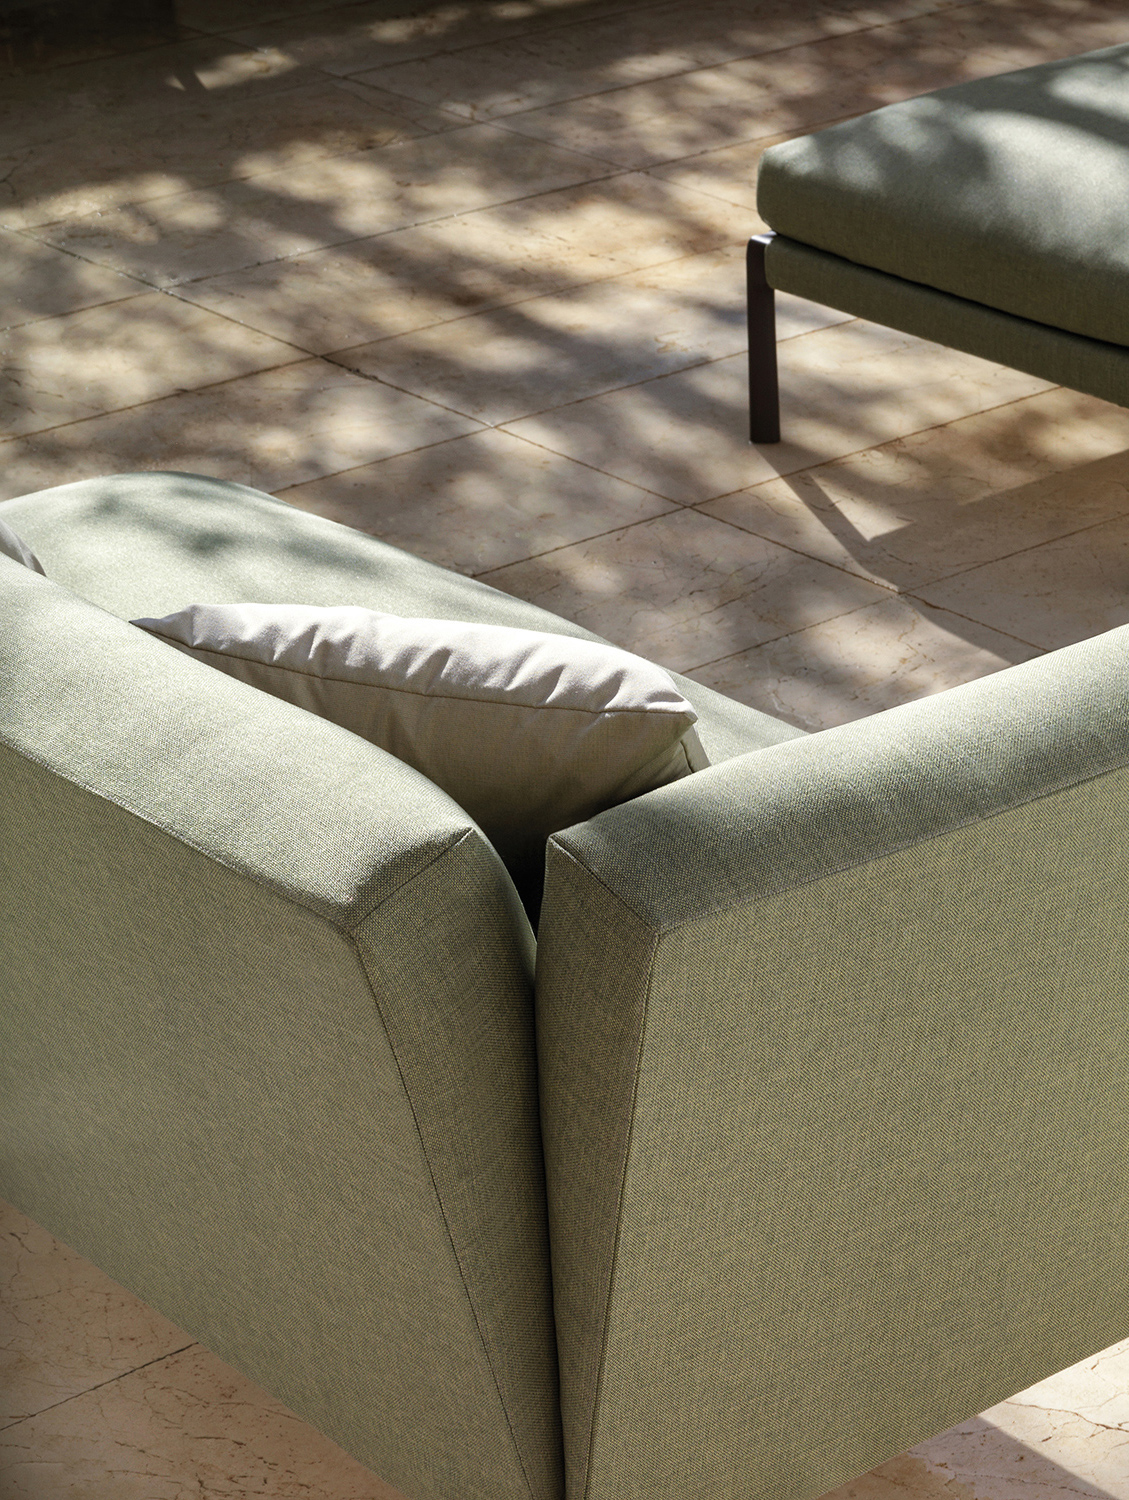 outdoor kollektion - sofas - rechtes modul livit